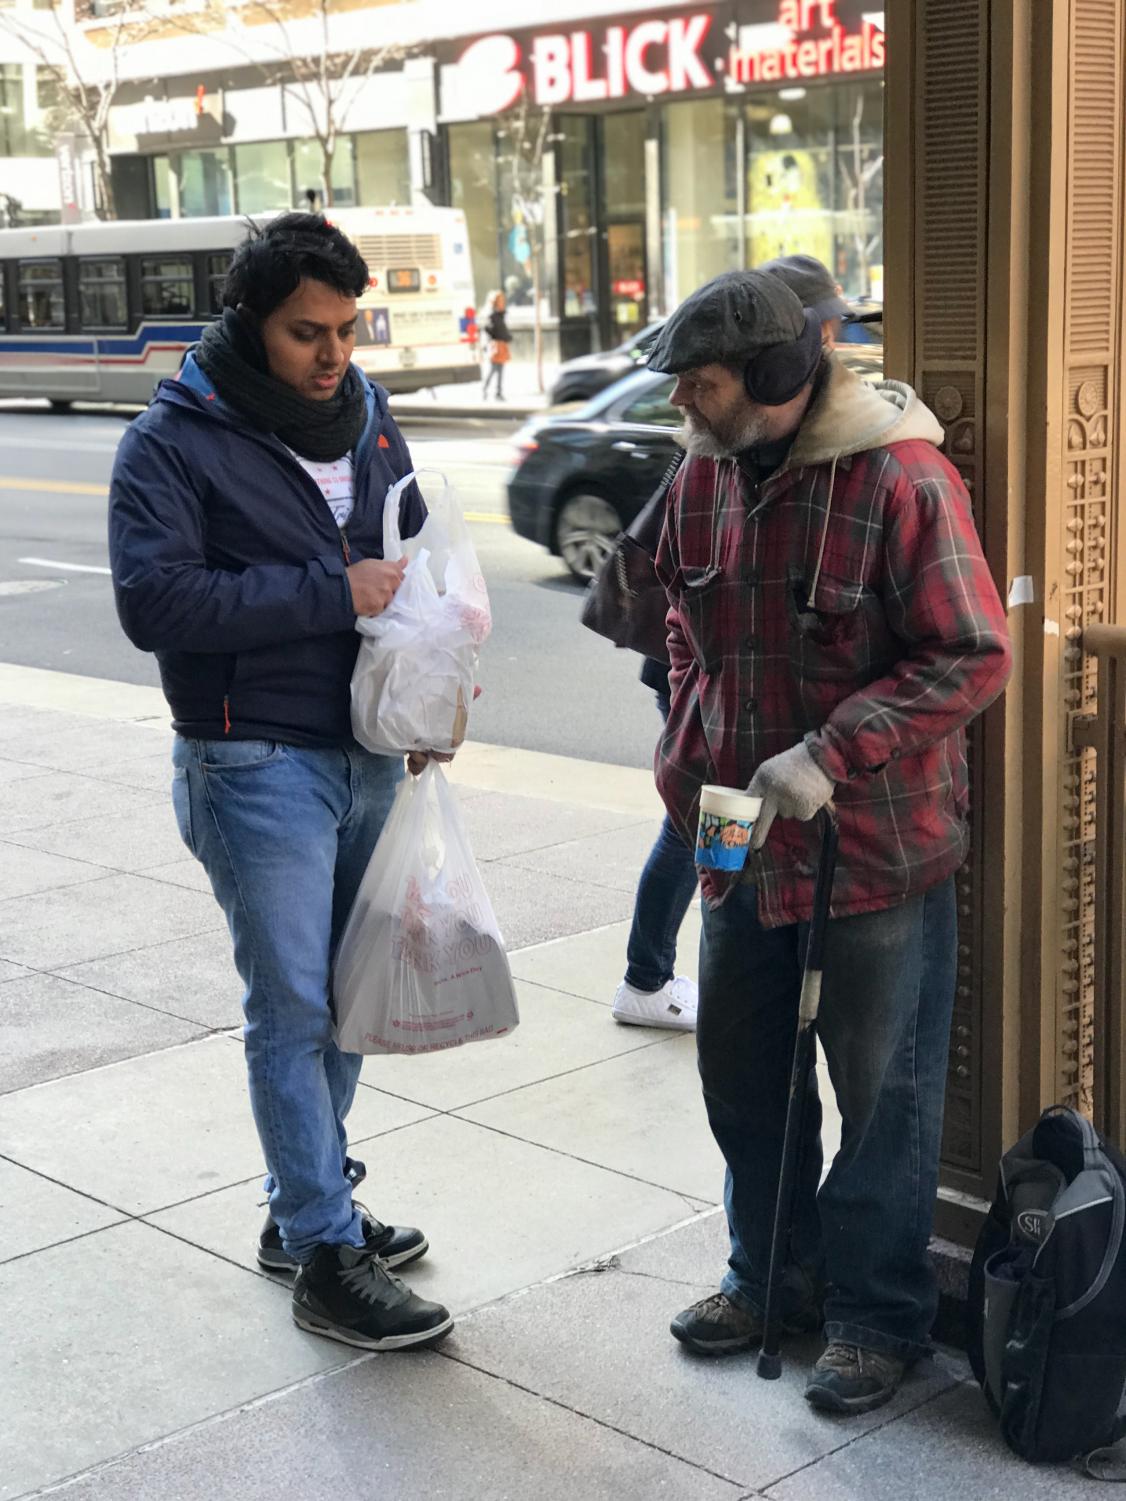 Feeding+the+homeless